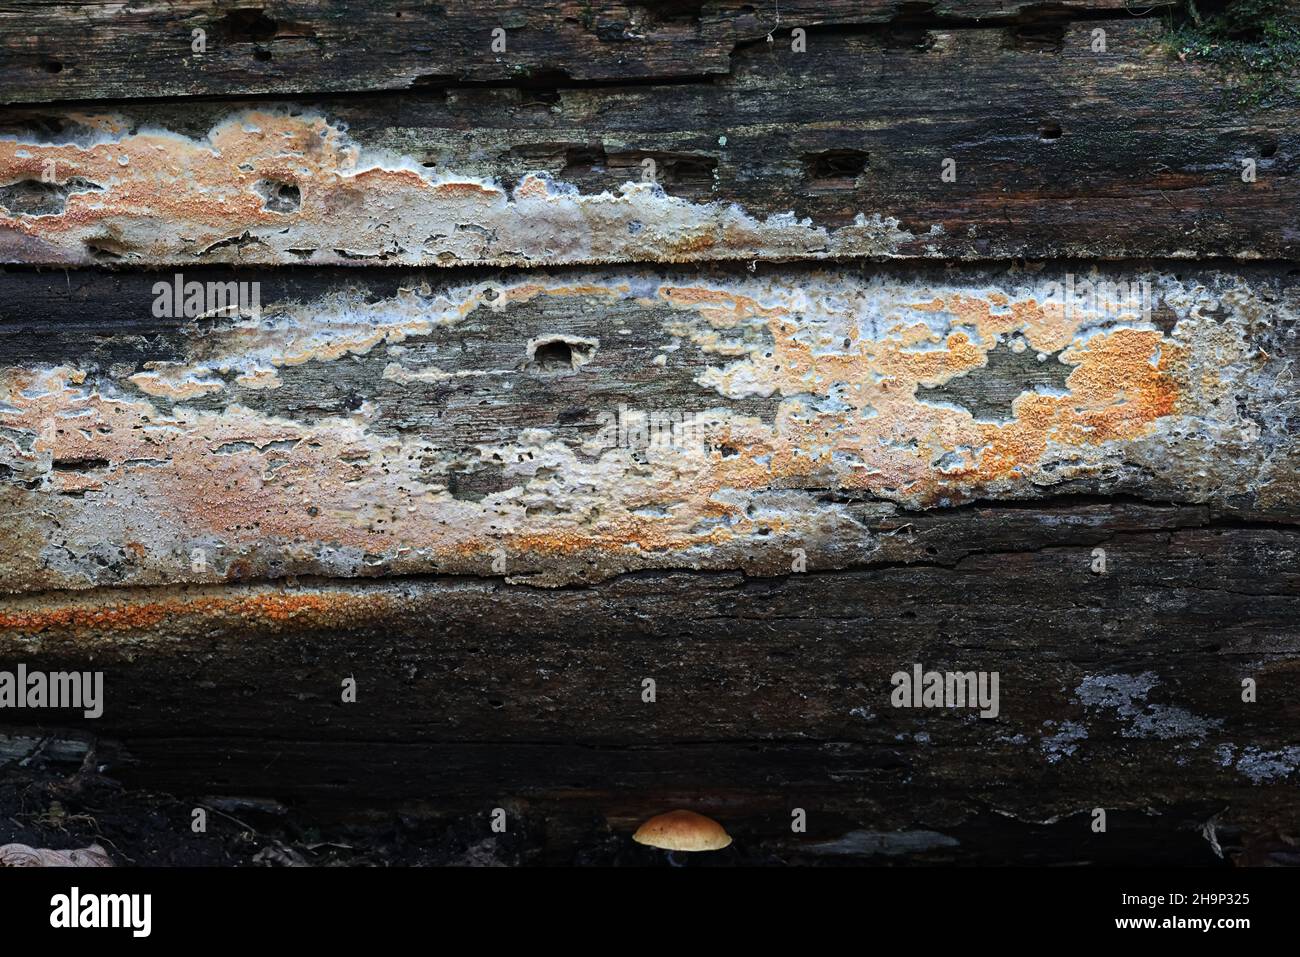 Leucogyrophana mollusque, communément appelé croûte d'orange gauchrée, champignon sauvage de Finlande Banque D'Images